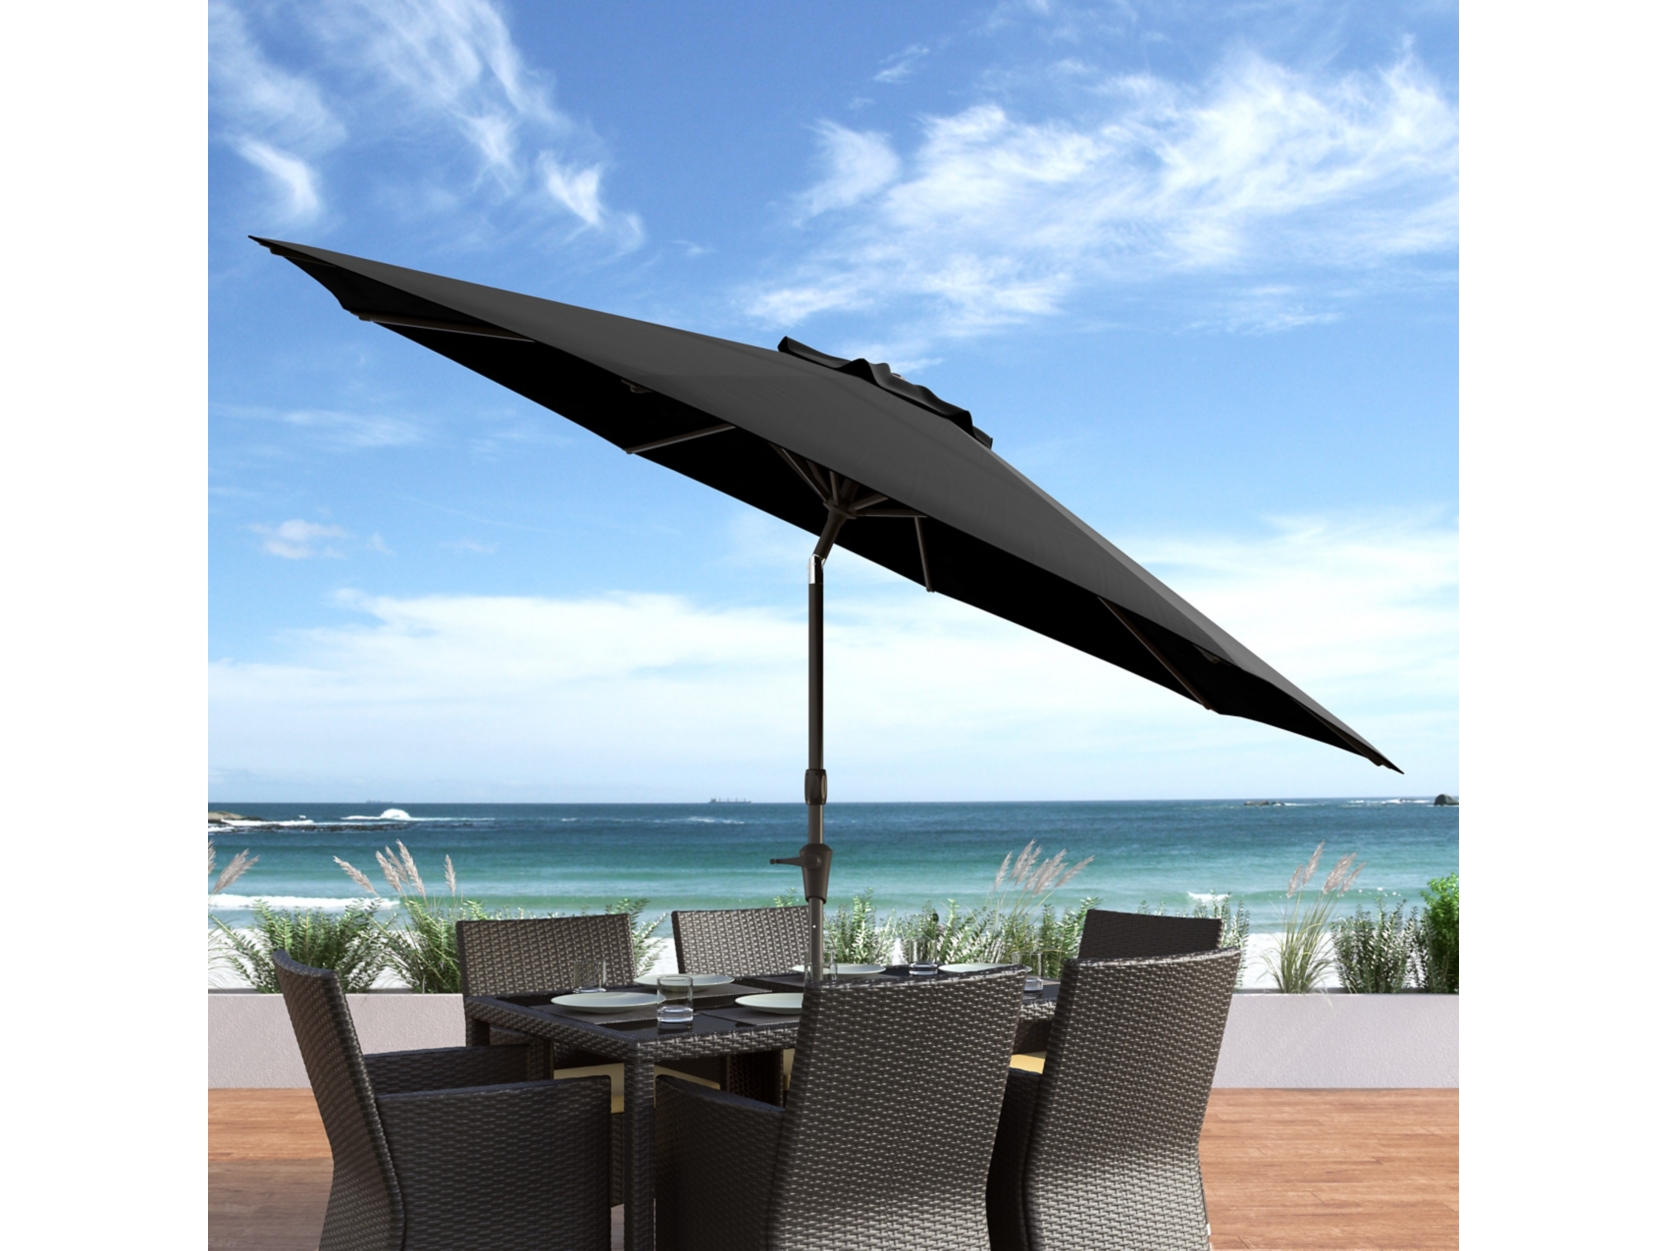 Image of Outdoor Patio Umbrella